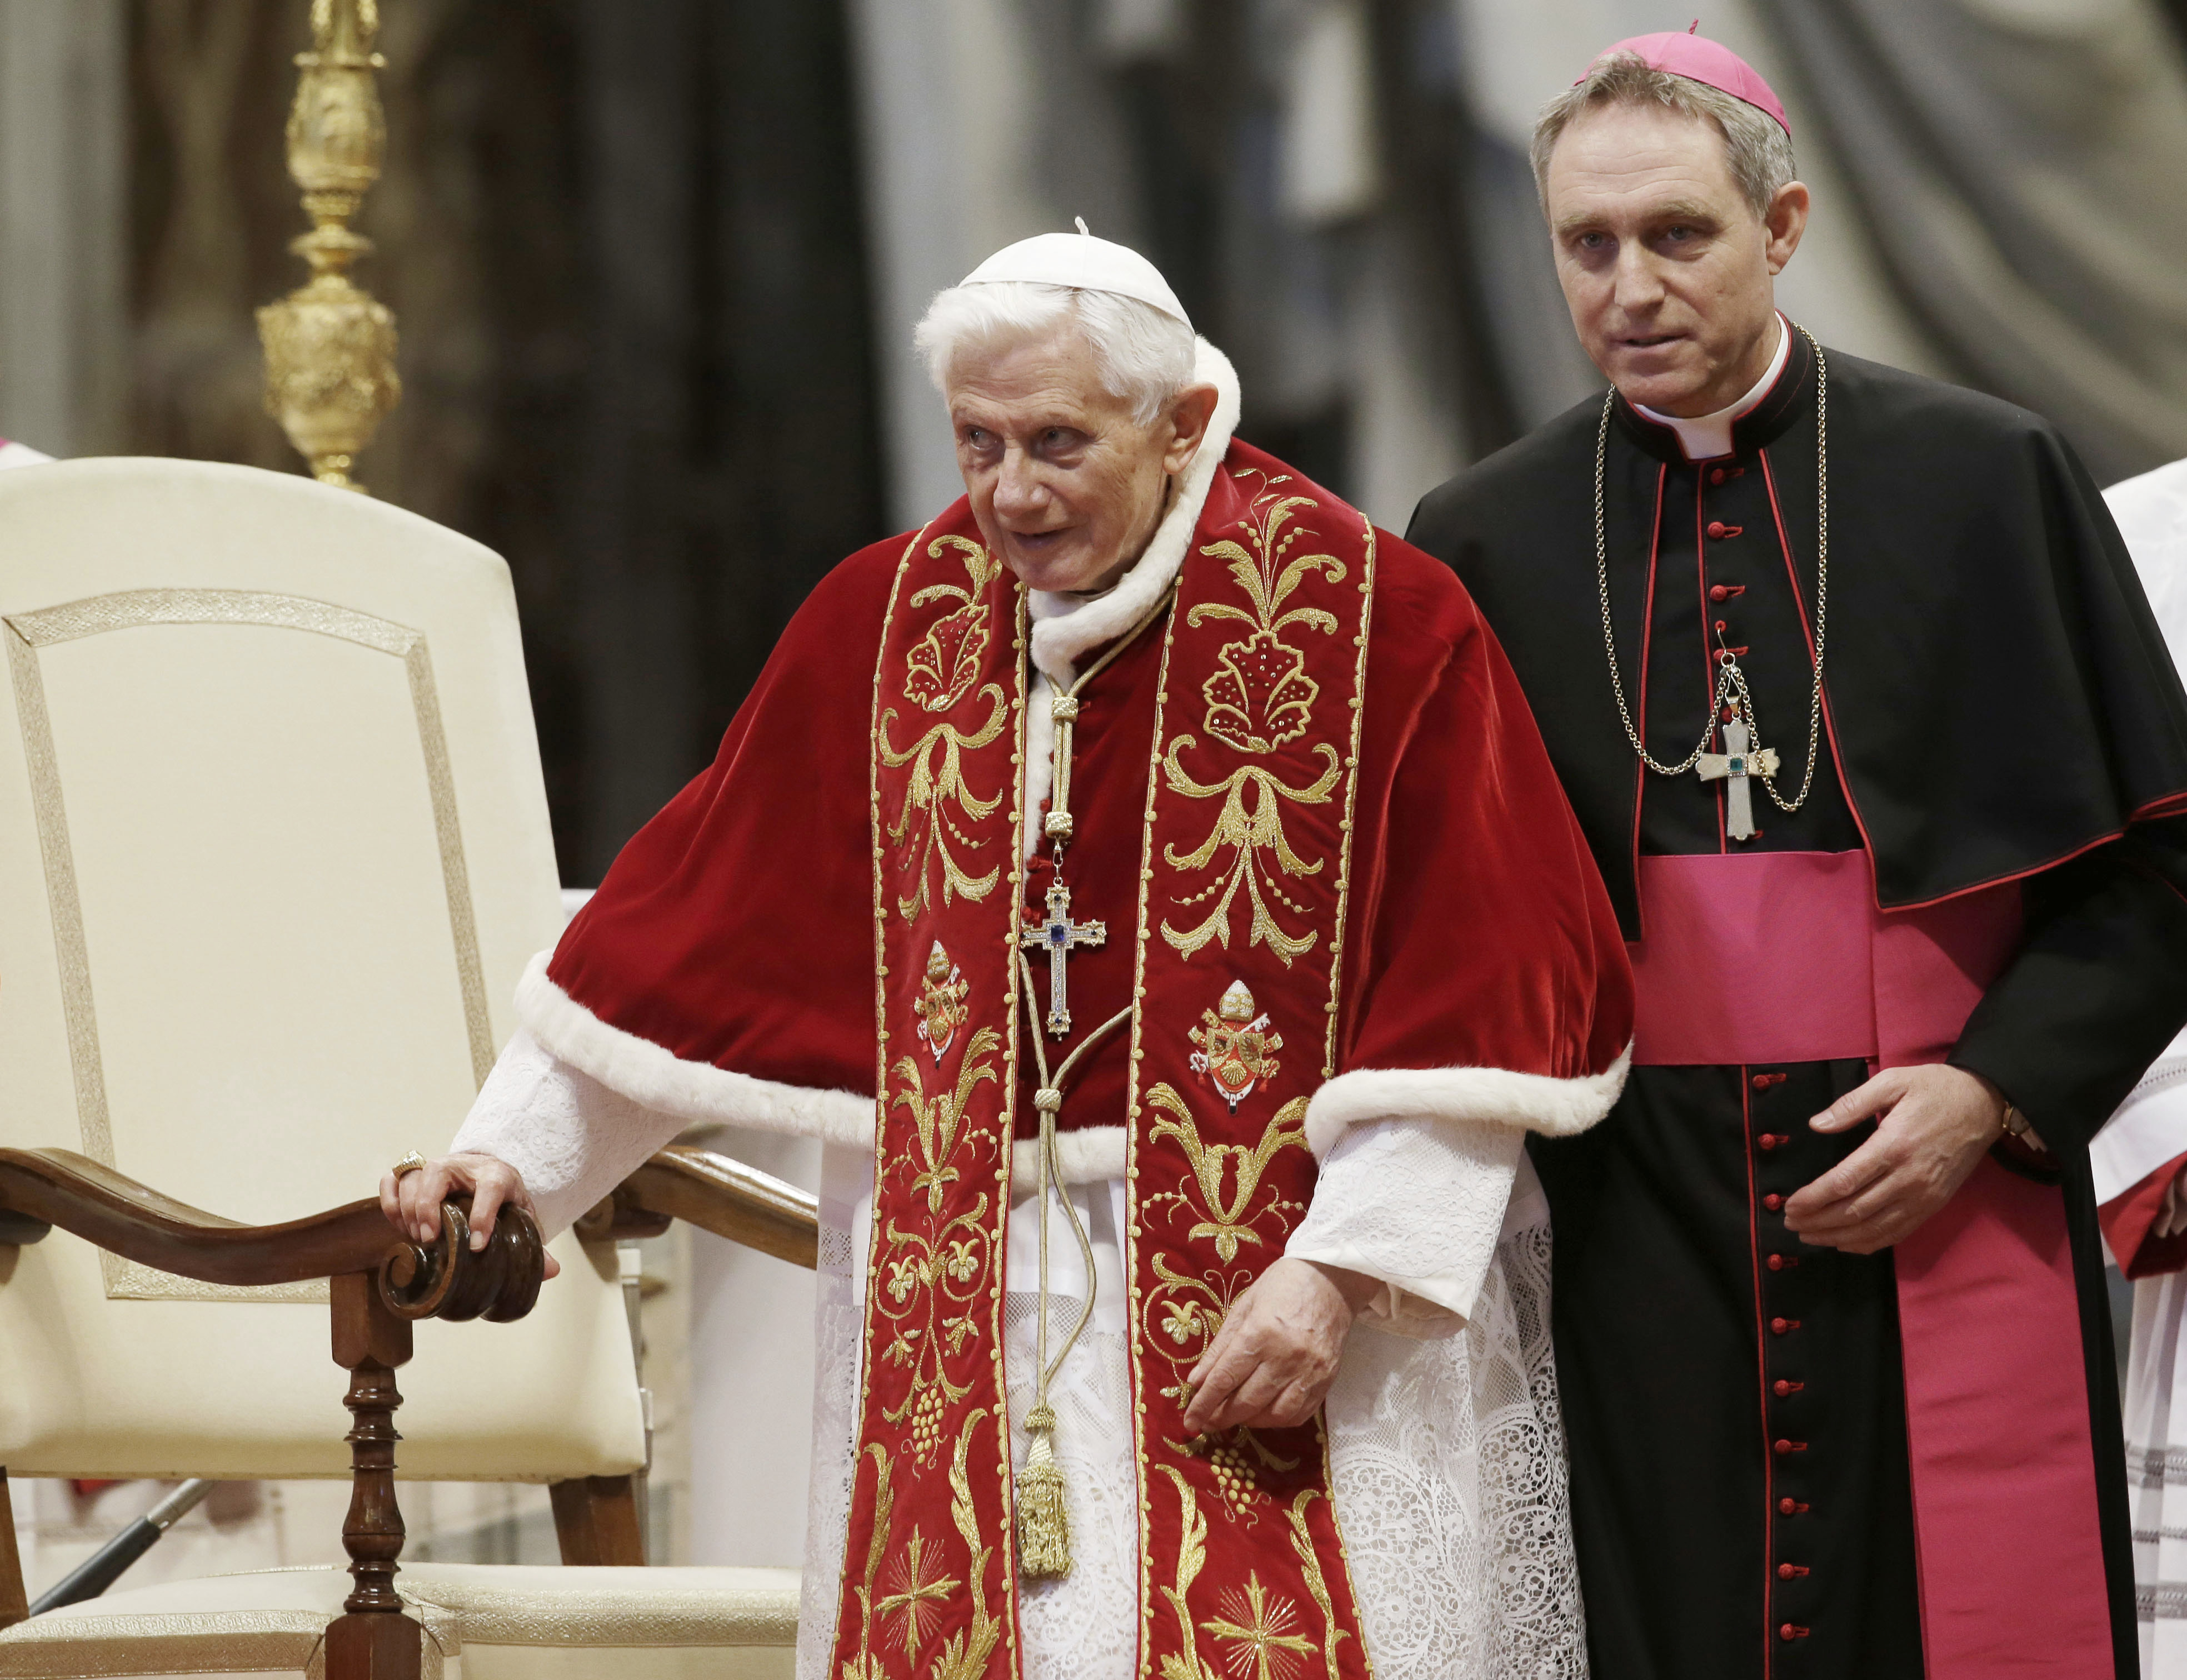 Foto de archivo: El papa Benedicto XVI, acompañado de su secretario personal, el arzobispo Georg Gaenswein (AP/Gregorio Borgia)